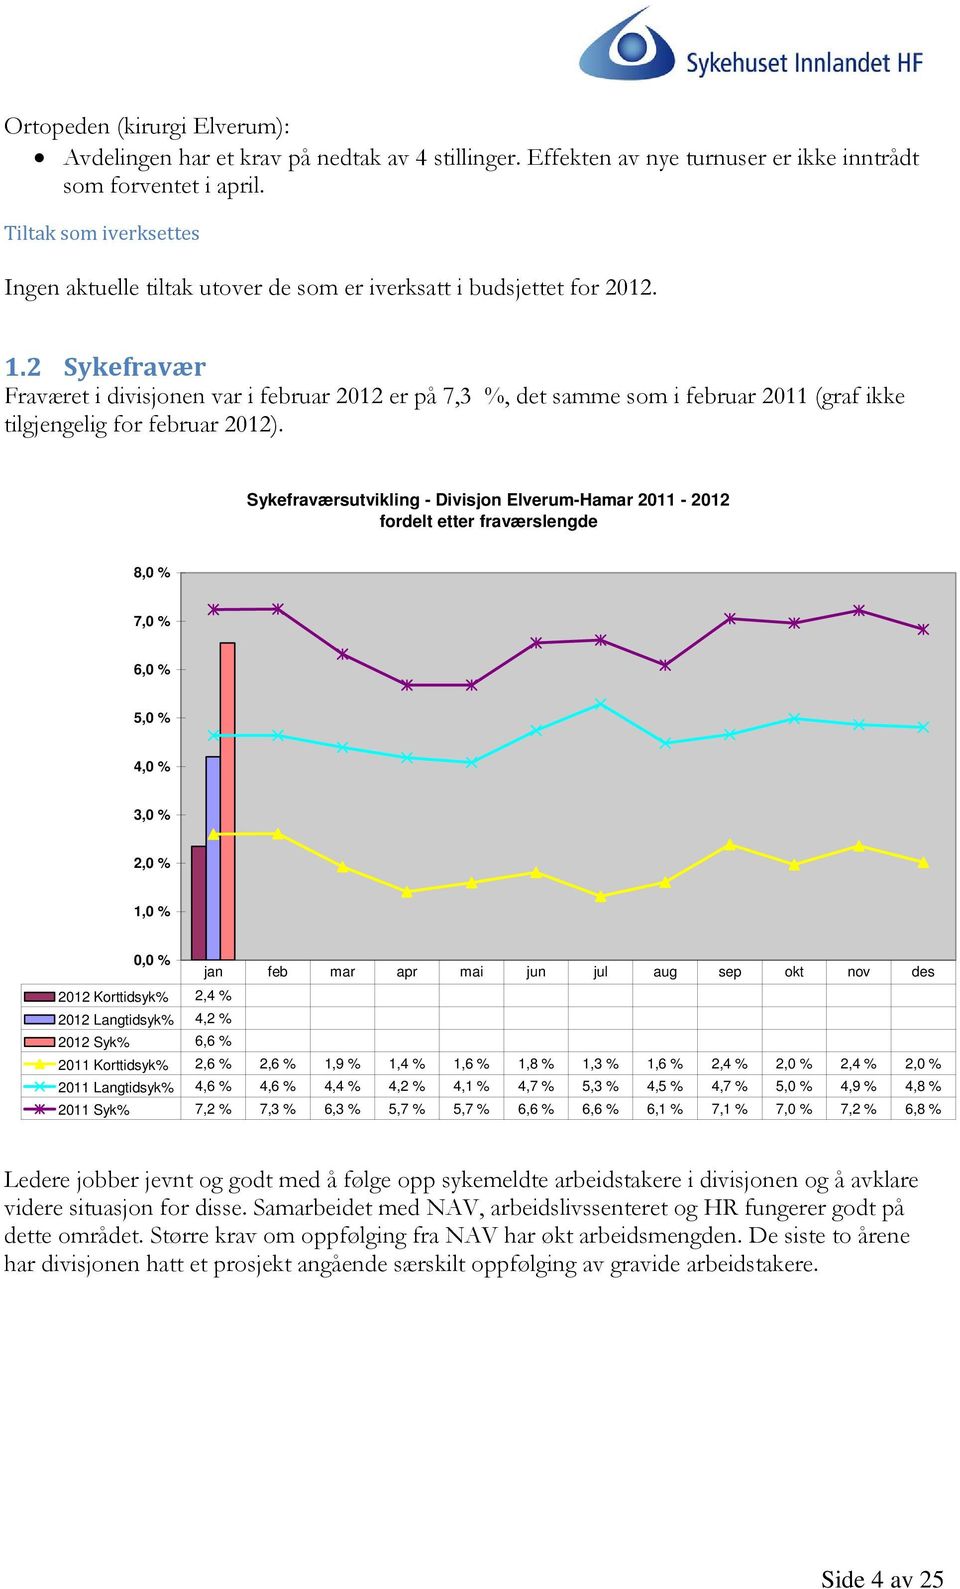 2 Sykefravær Fraværet i divisjonen var i februar 2012 er på 7,3 %, det samme som i februar 2011 (graf ikke tilgjengelig for februar 2012).